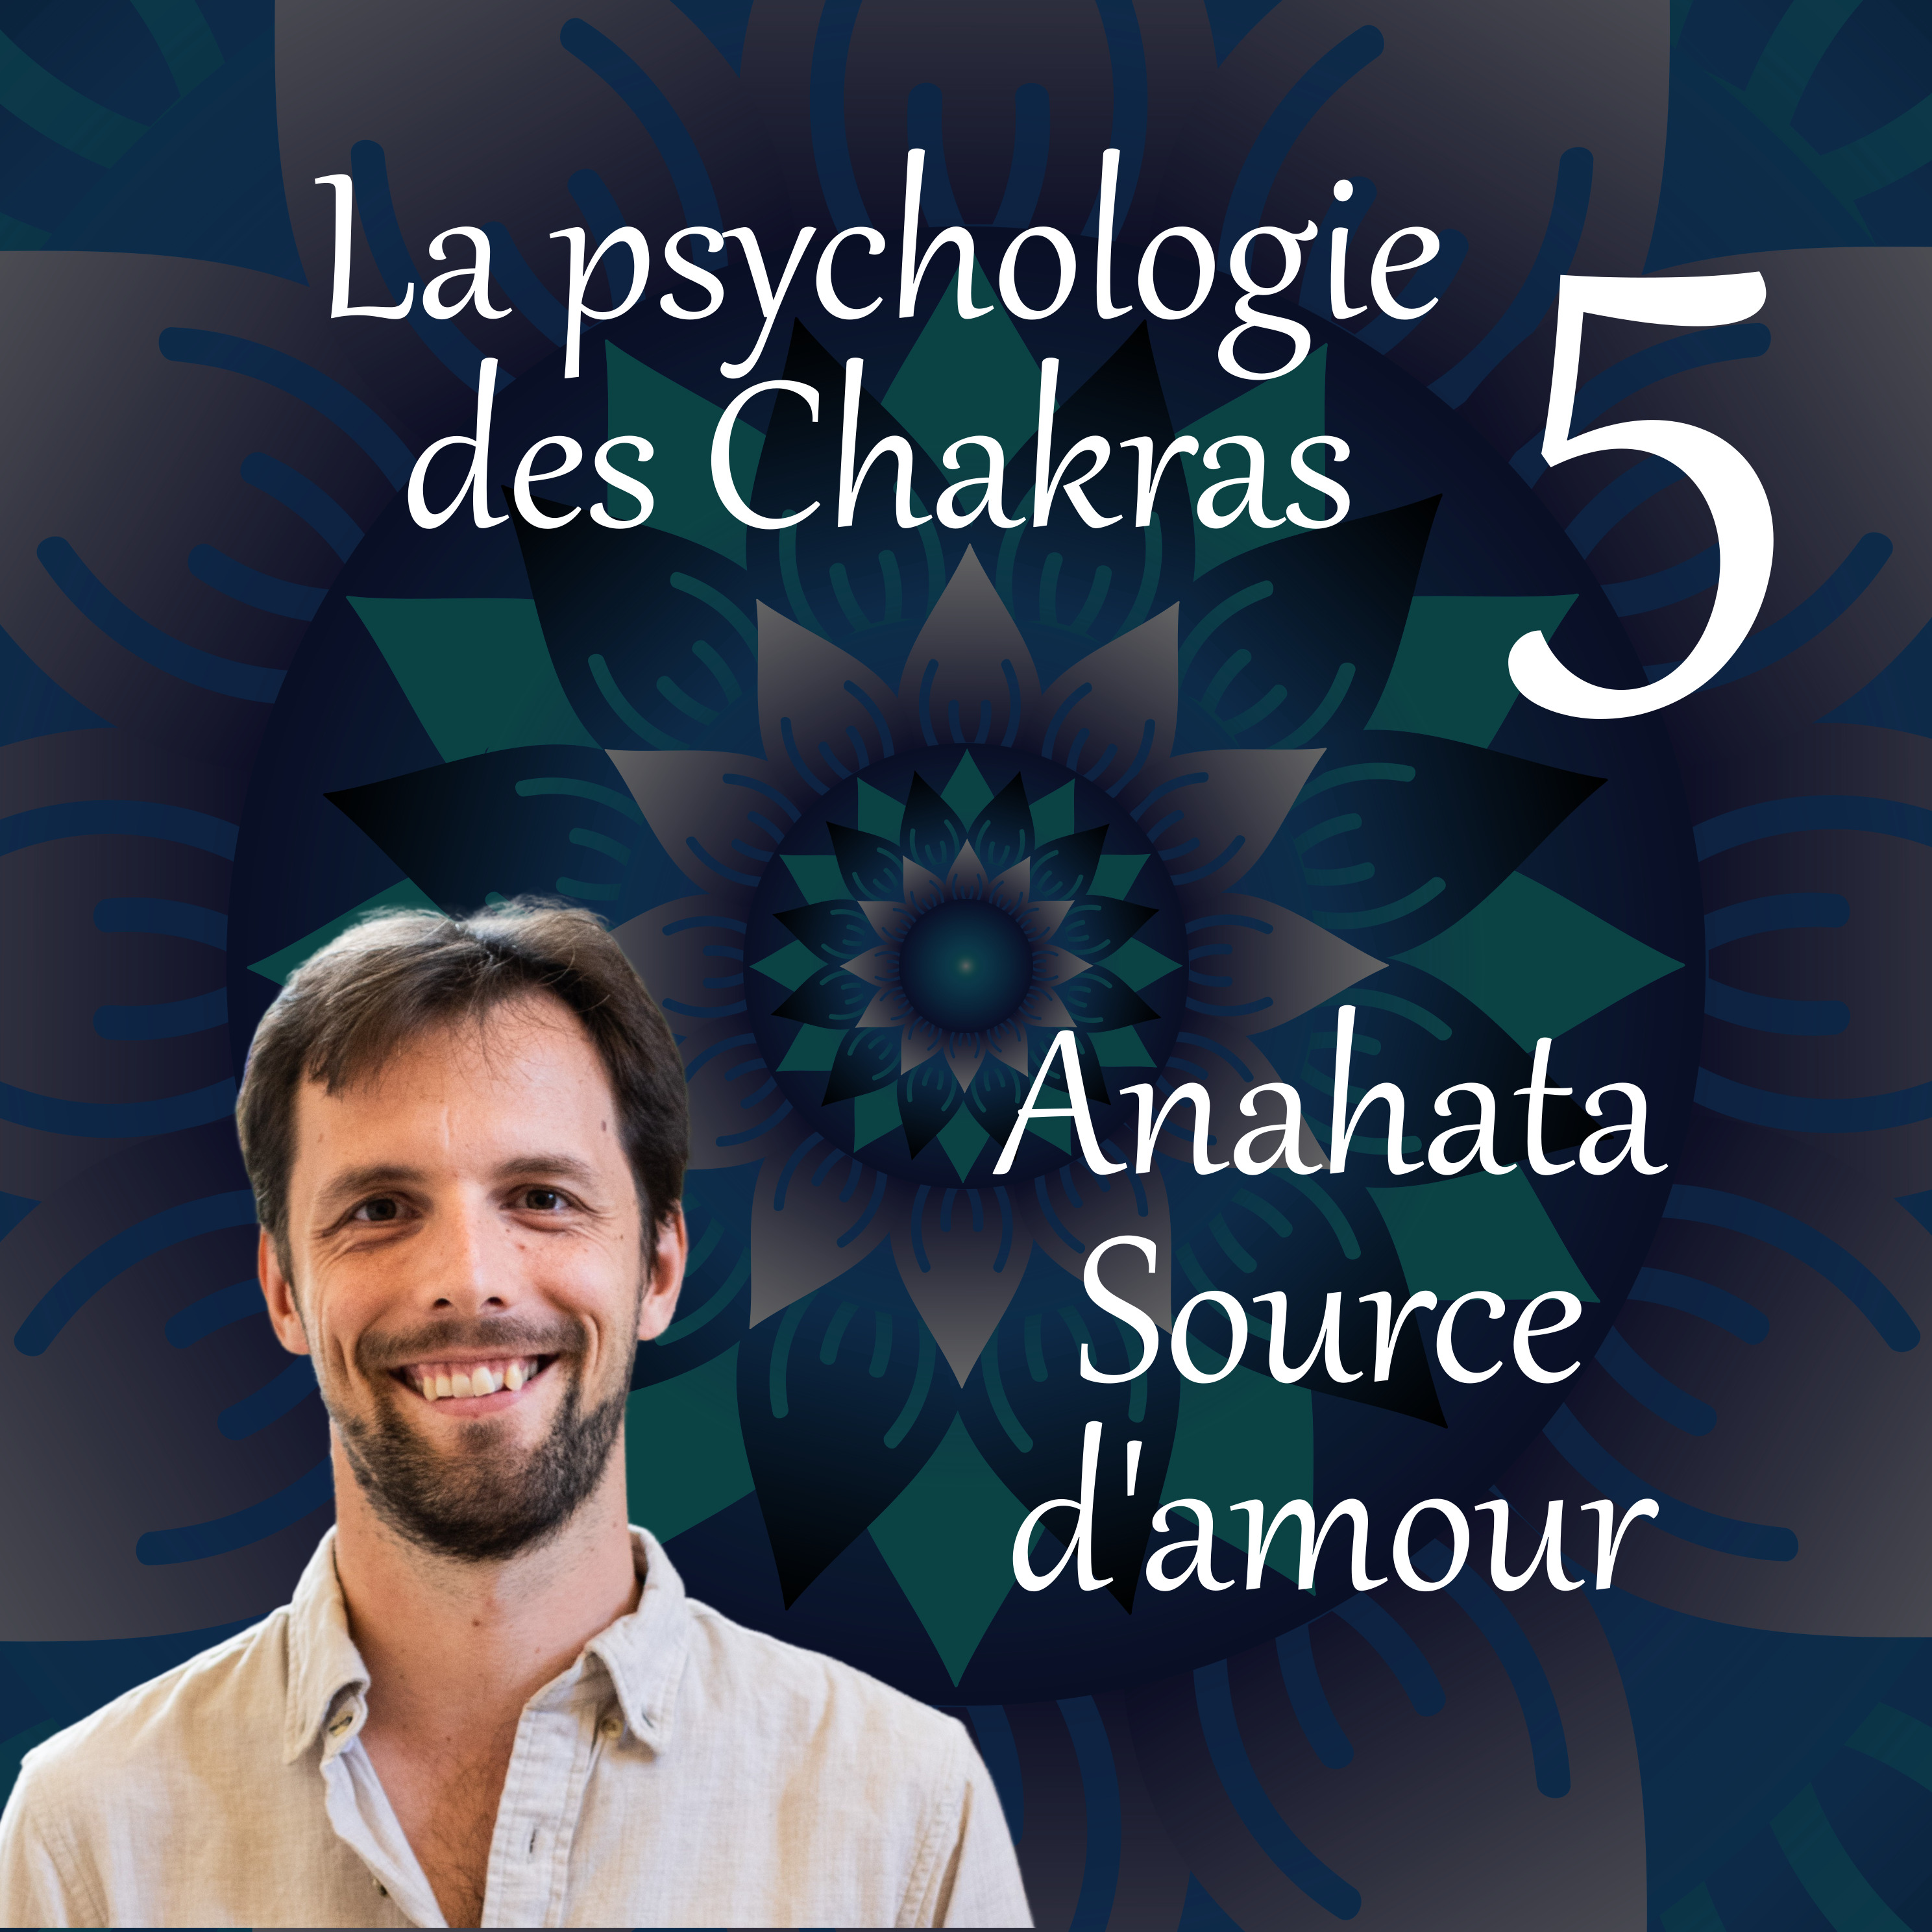 Source d'amour – La psychologie des chakras 05